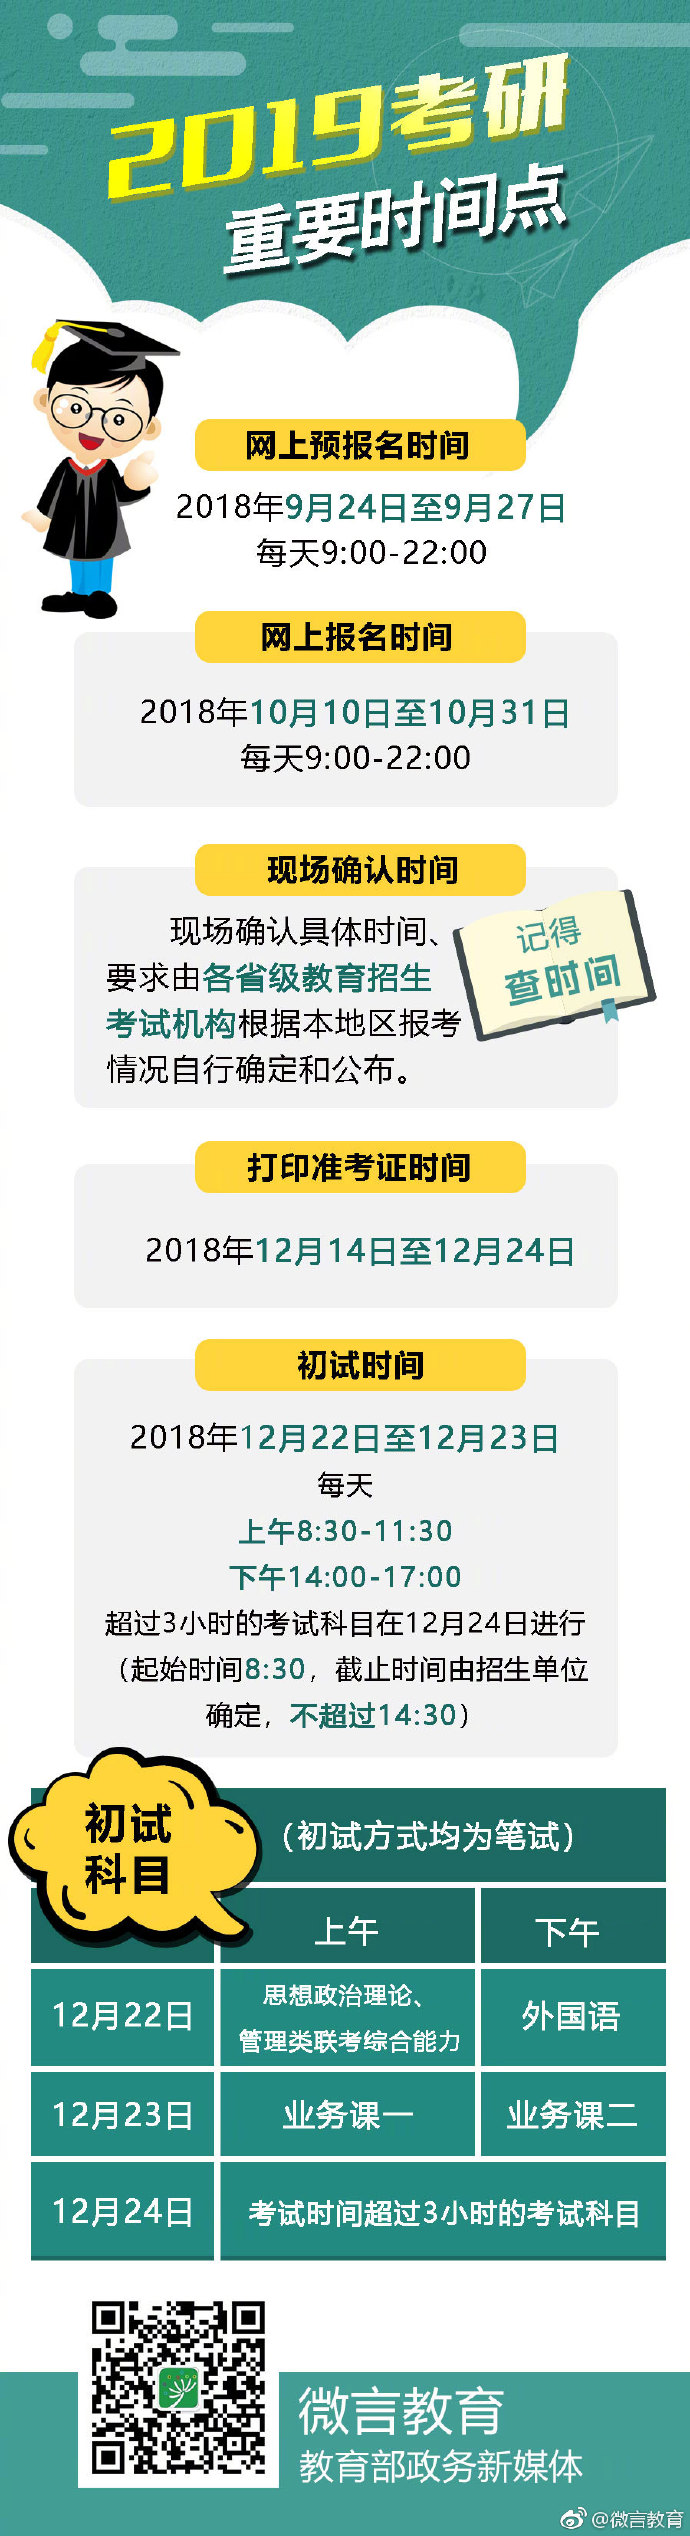 2019考研10月10日起报名 12月22日至23日考试(图)